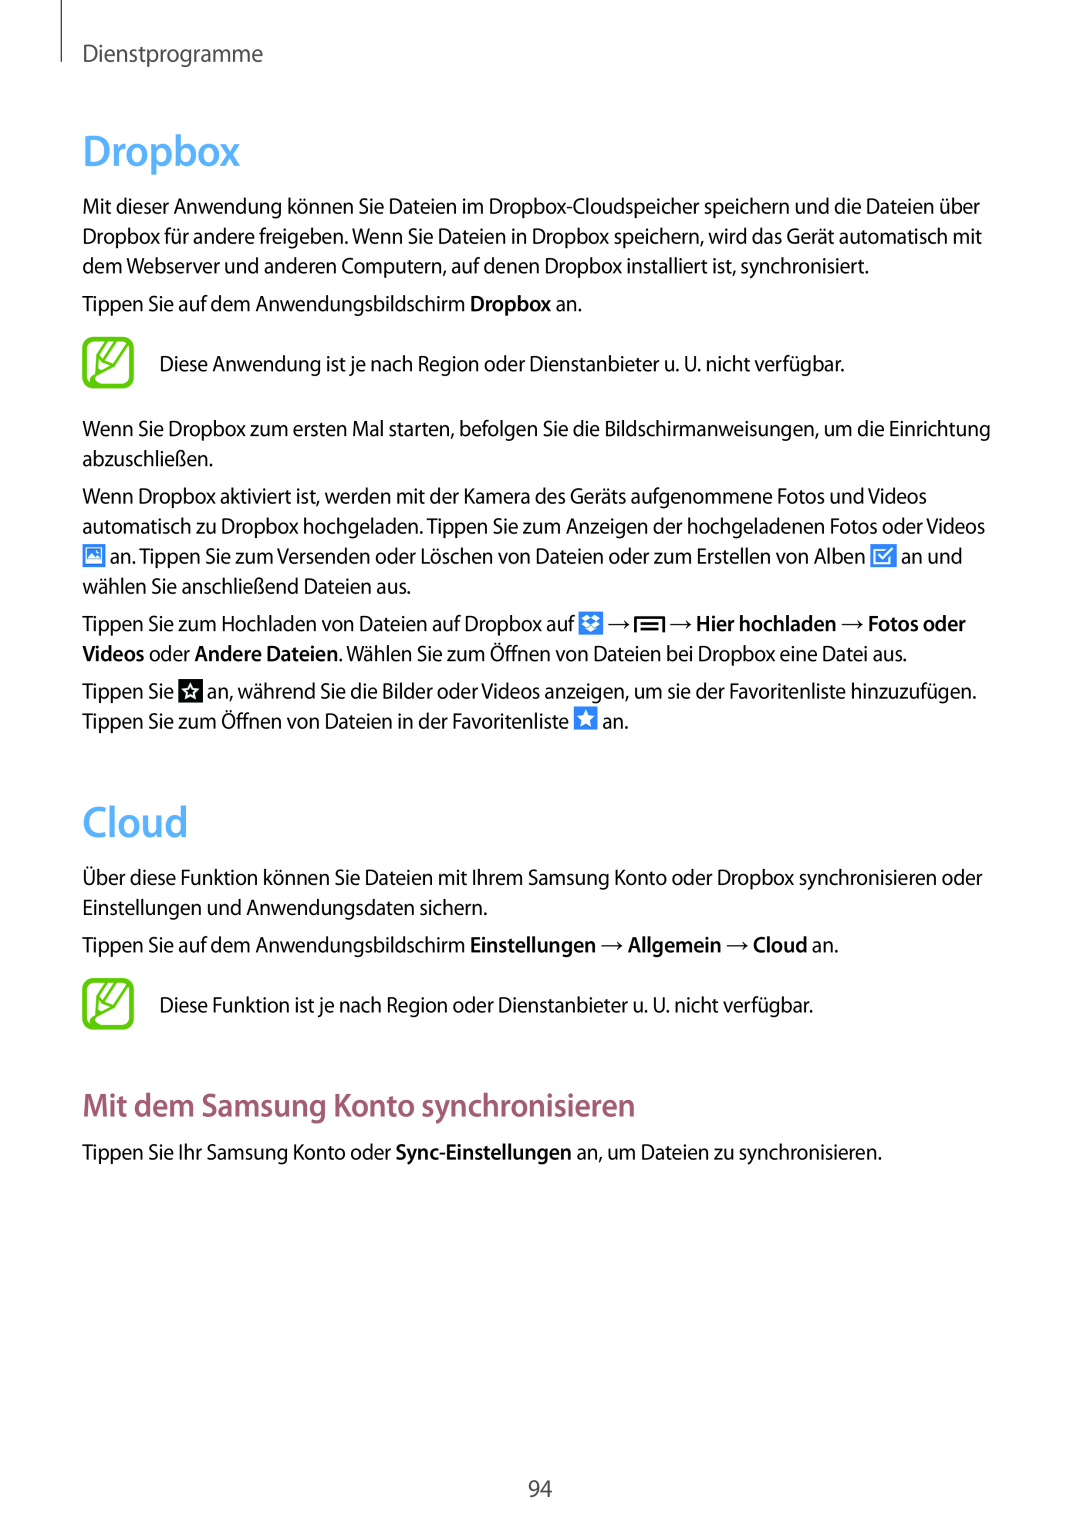 Samsung SM-P6000ZKAXEF, SM-P6000ZWAXEO manual Dropbox, Cloud, Mit dem Samsung Konto synchronisieren, Dienstprogramme 